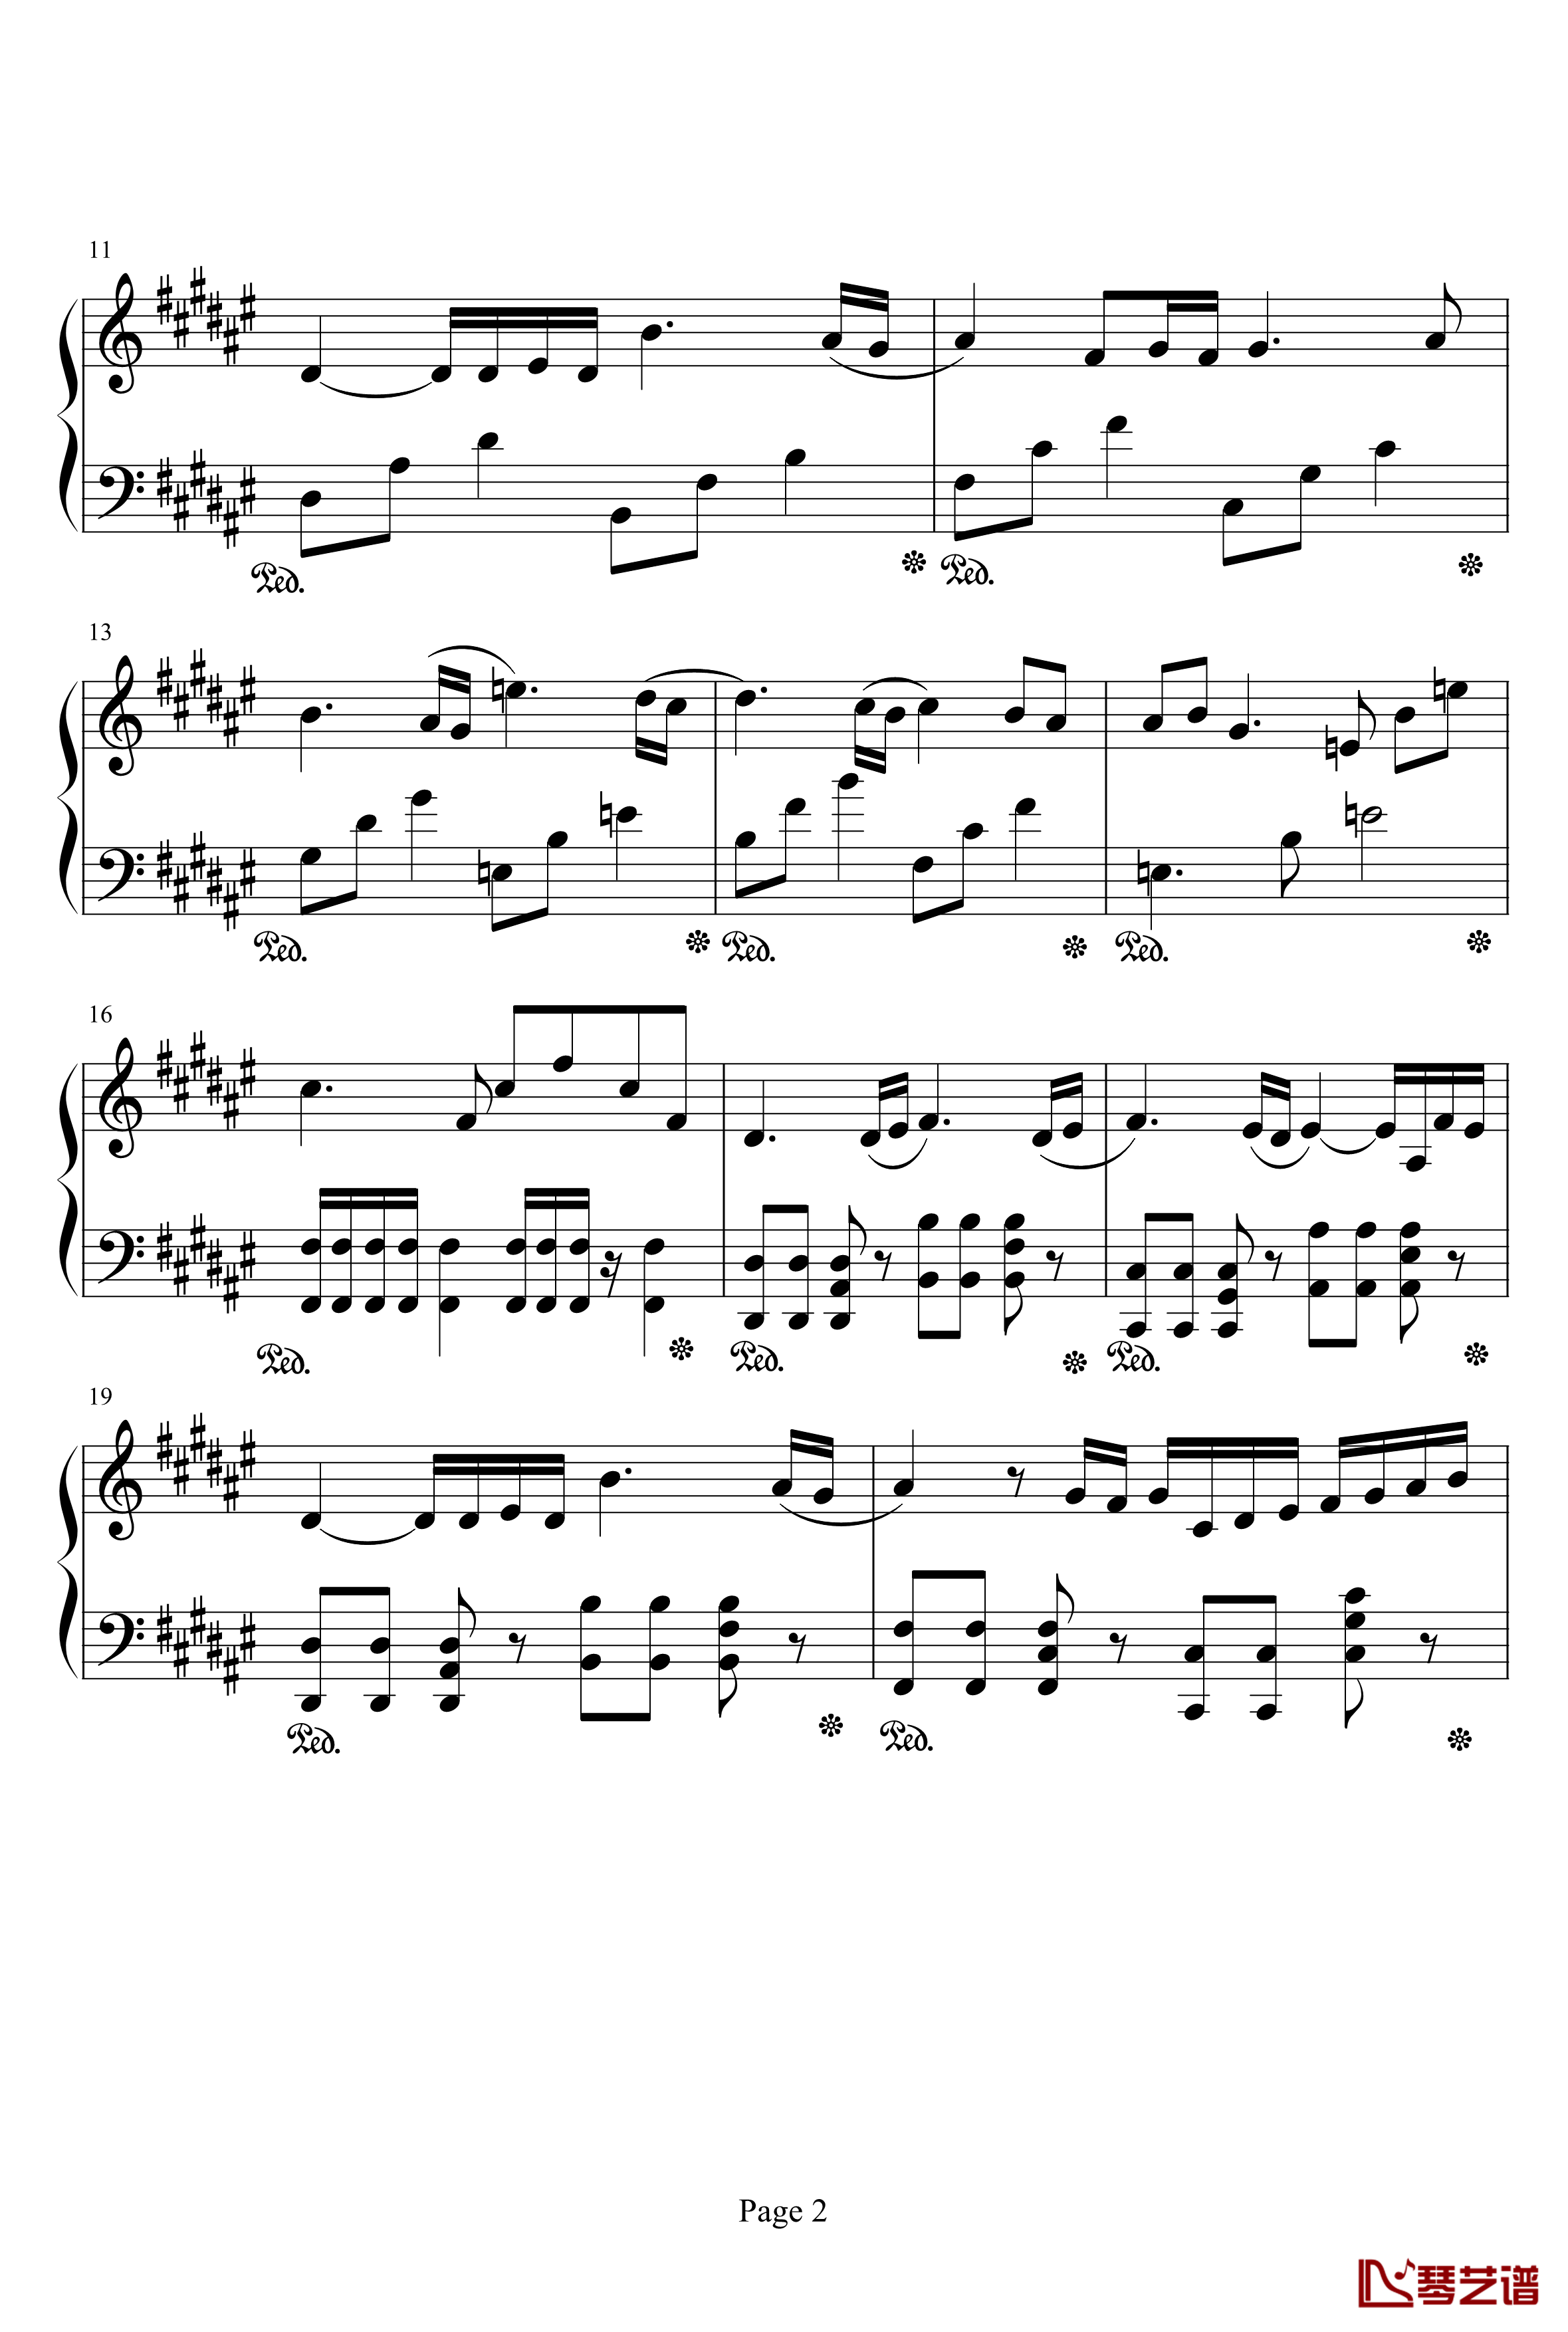 亡灵序曲钢琴谱-完整版-亡灵序曲2